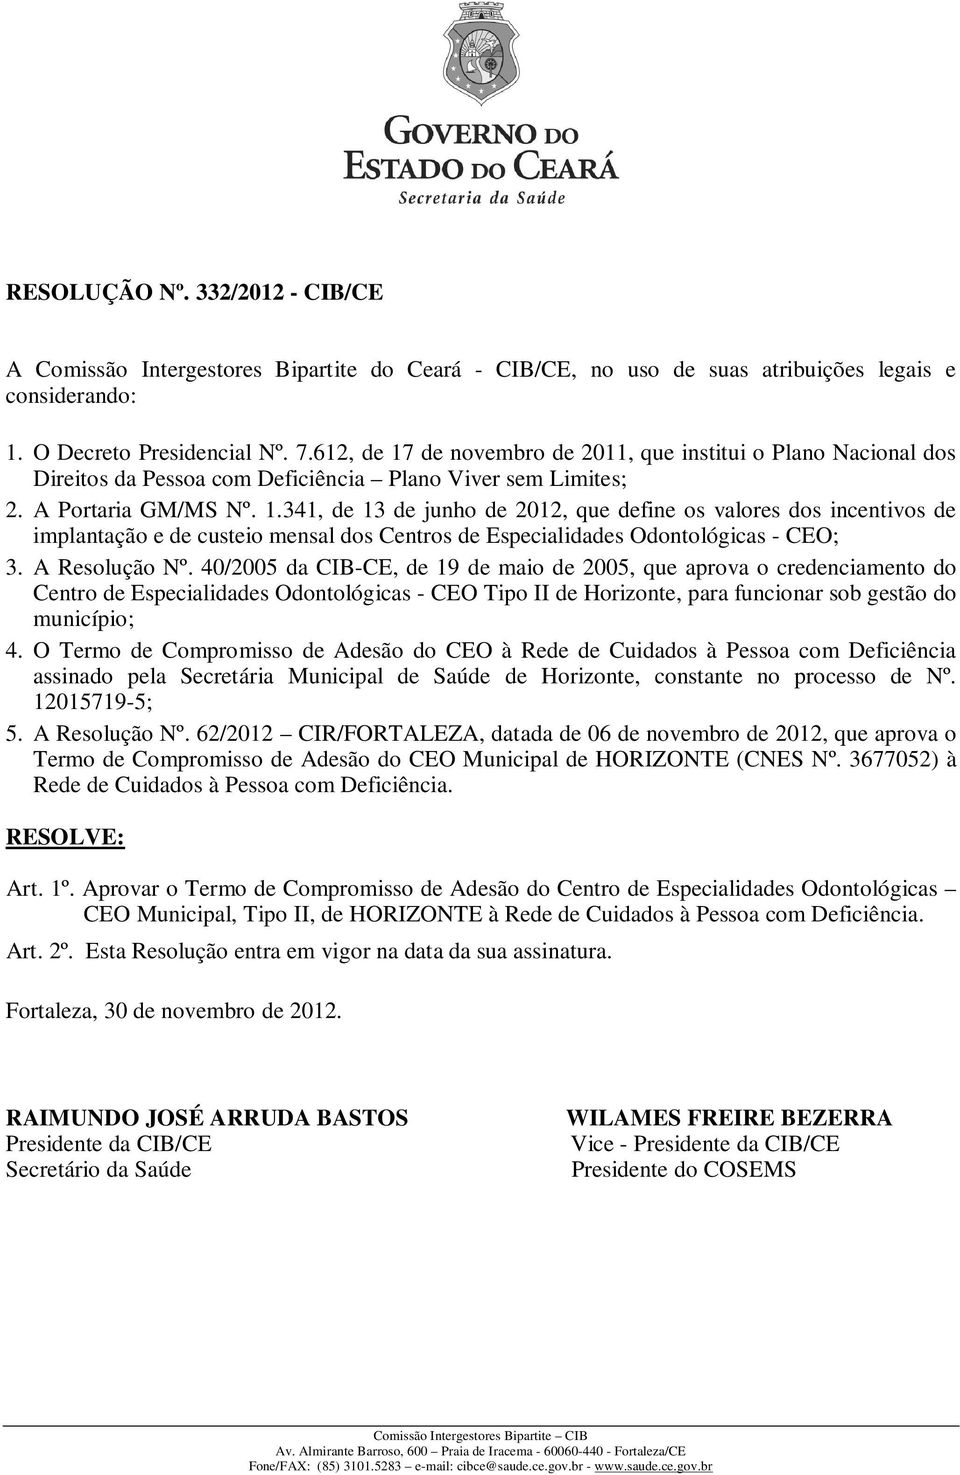 A Resolução Nº. 40/2005 da CIB-CE, de 19 de maio de 2005, que aprova o credenciamento do Centro de Especialidades Odontológicas - CEO Tipo II de Horizonte, para funcionar sob gestão do município; 4.